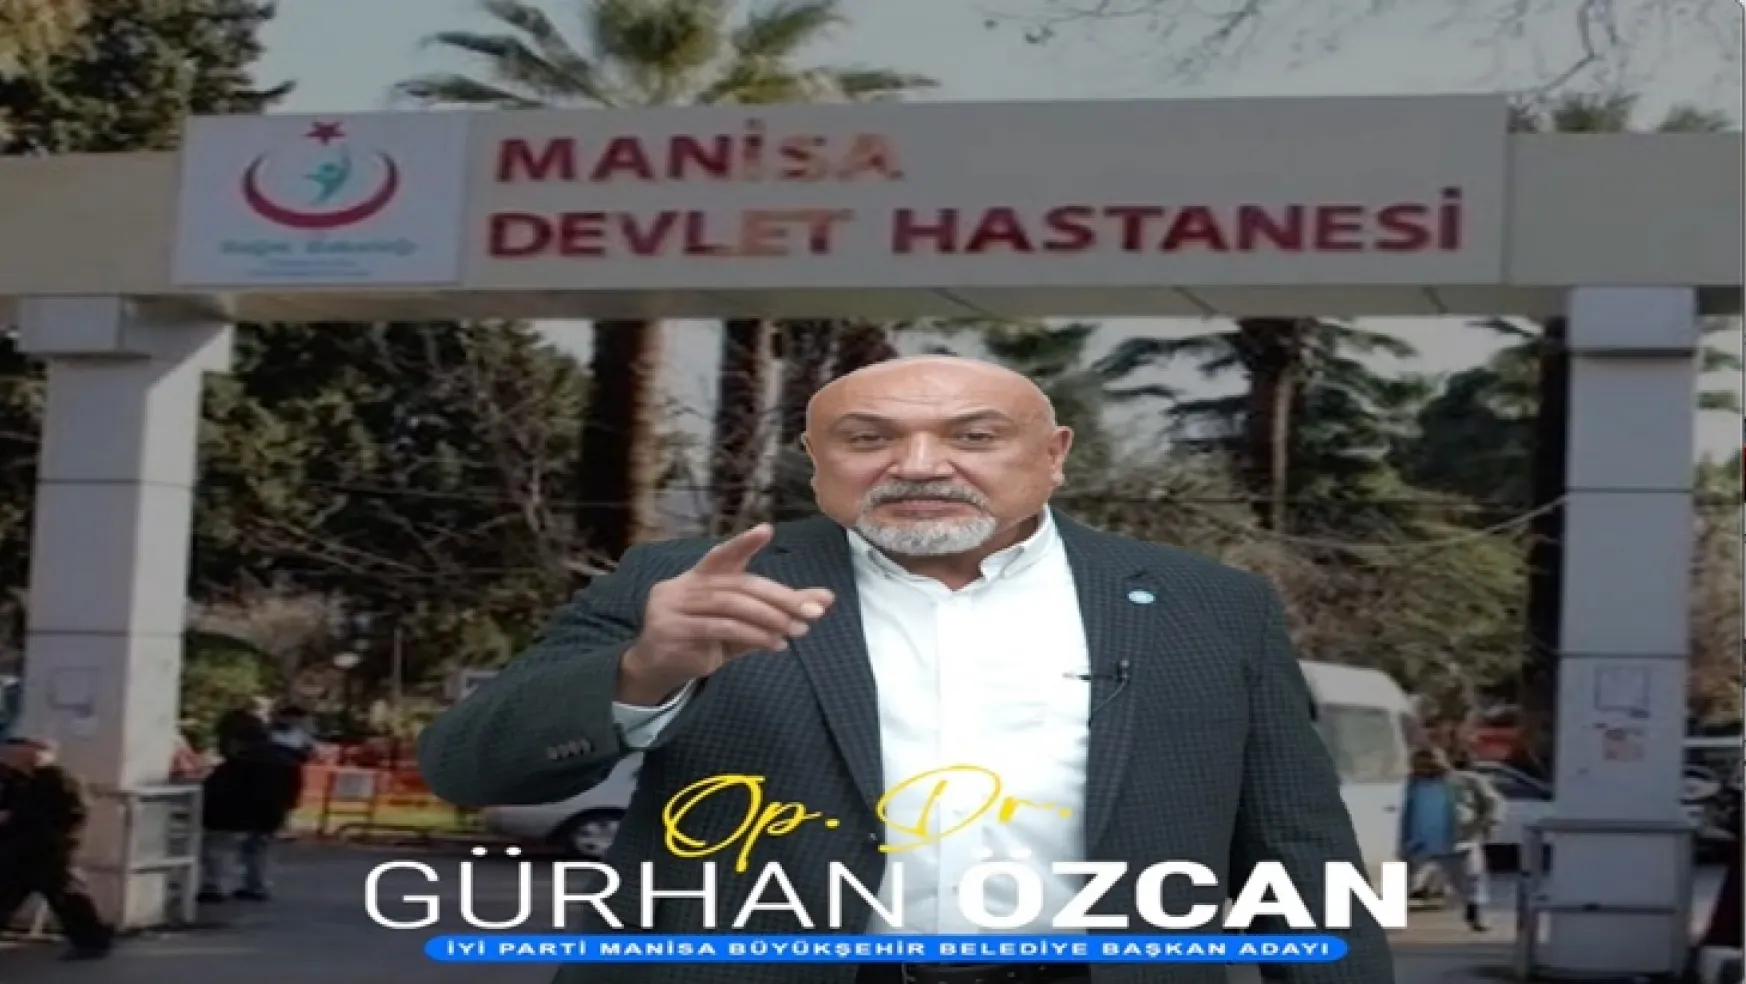 İyi Parti Manisa Büyükşehir Belediye başkan adayı Op.Dr. Gürhan Özcan'ın açıkladığı 5. reçetesi büyük heyecan yaratacak